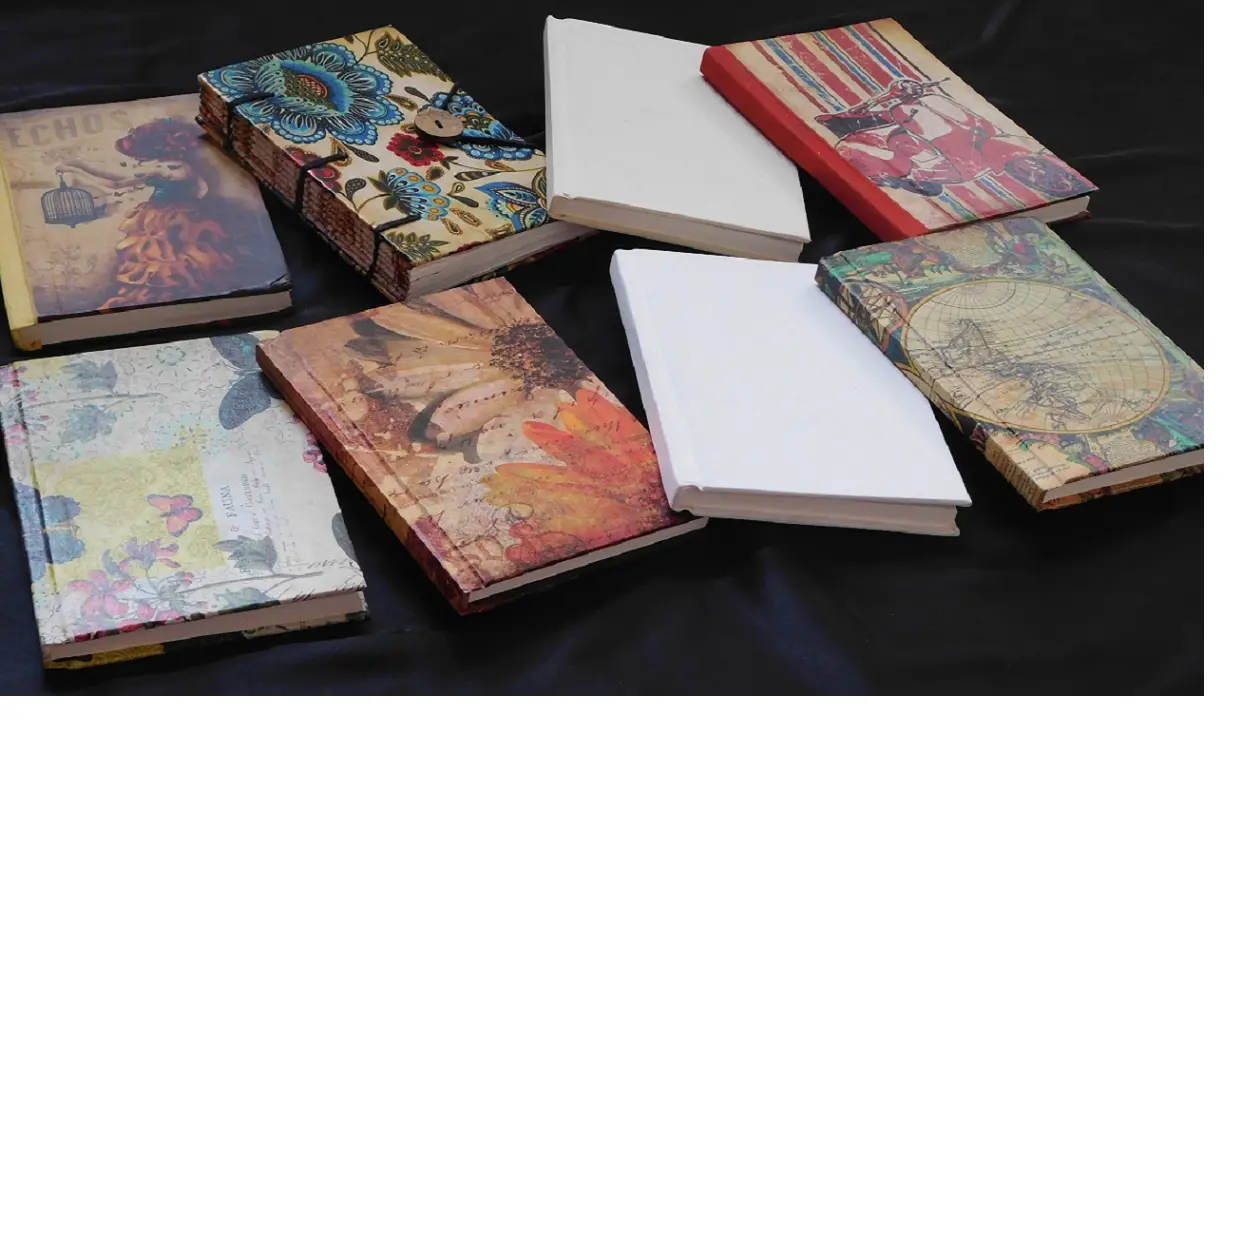 Polka dot impressos revistas em papel artesanal, bahi livros de arte e artesanato, desenho e pintura, escrita, disponível com o logotipo